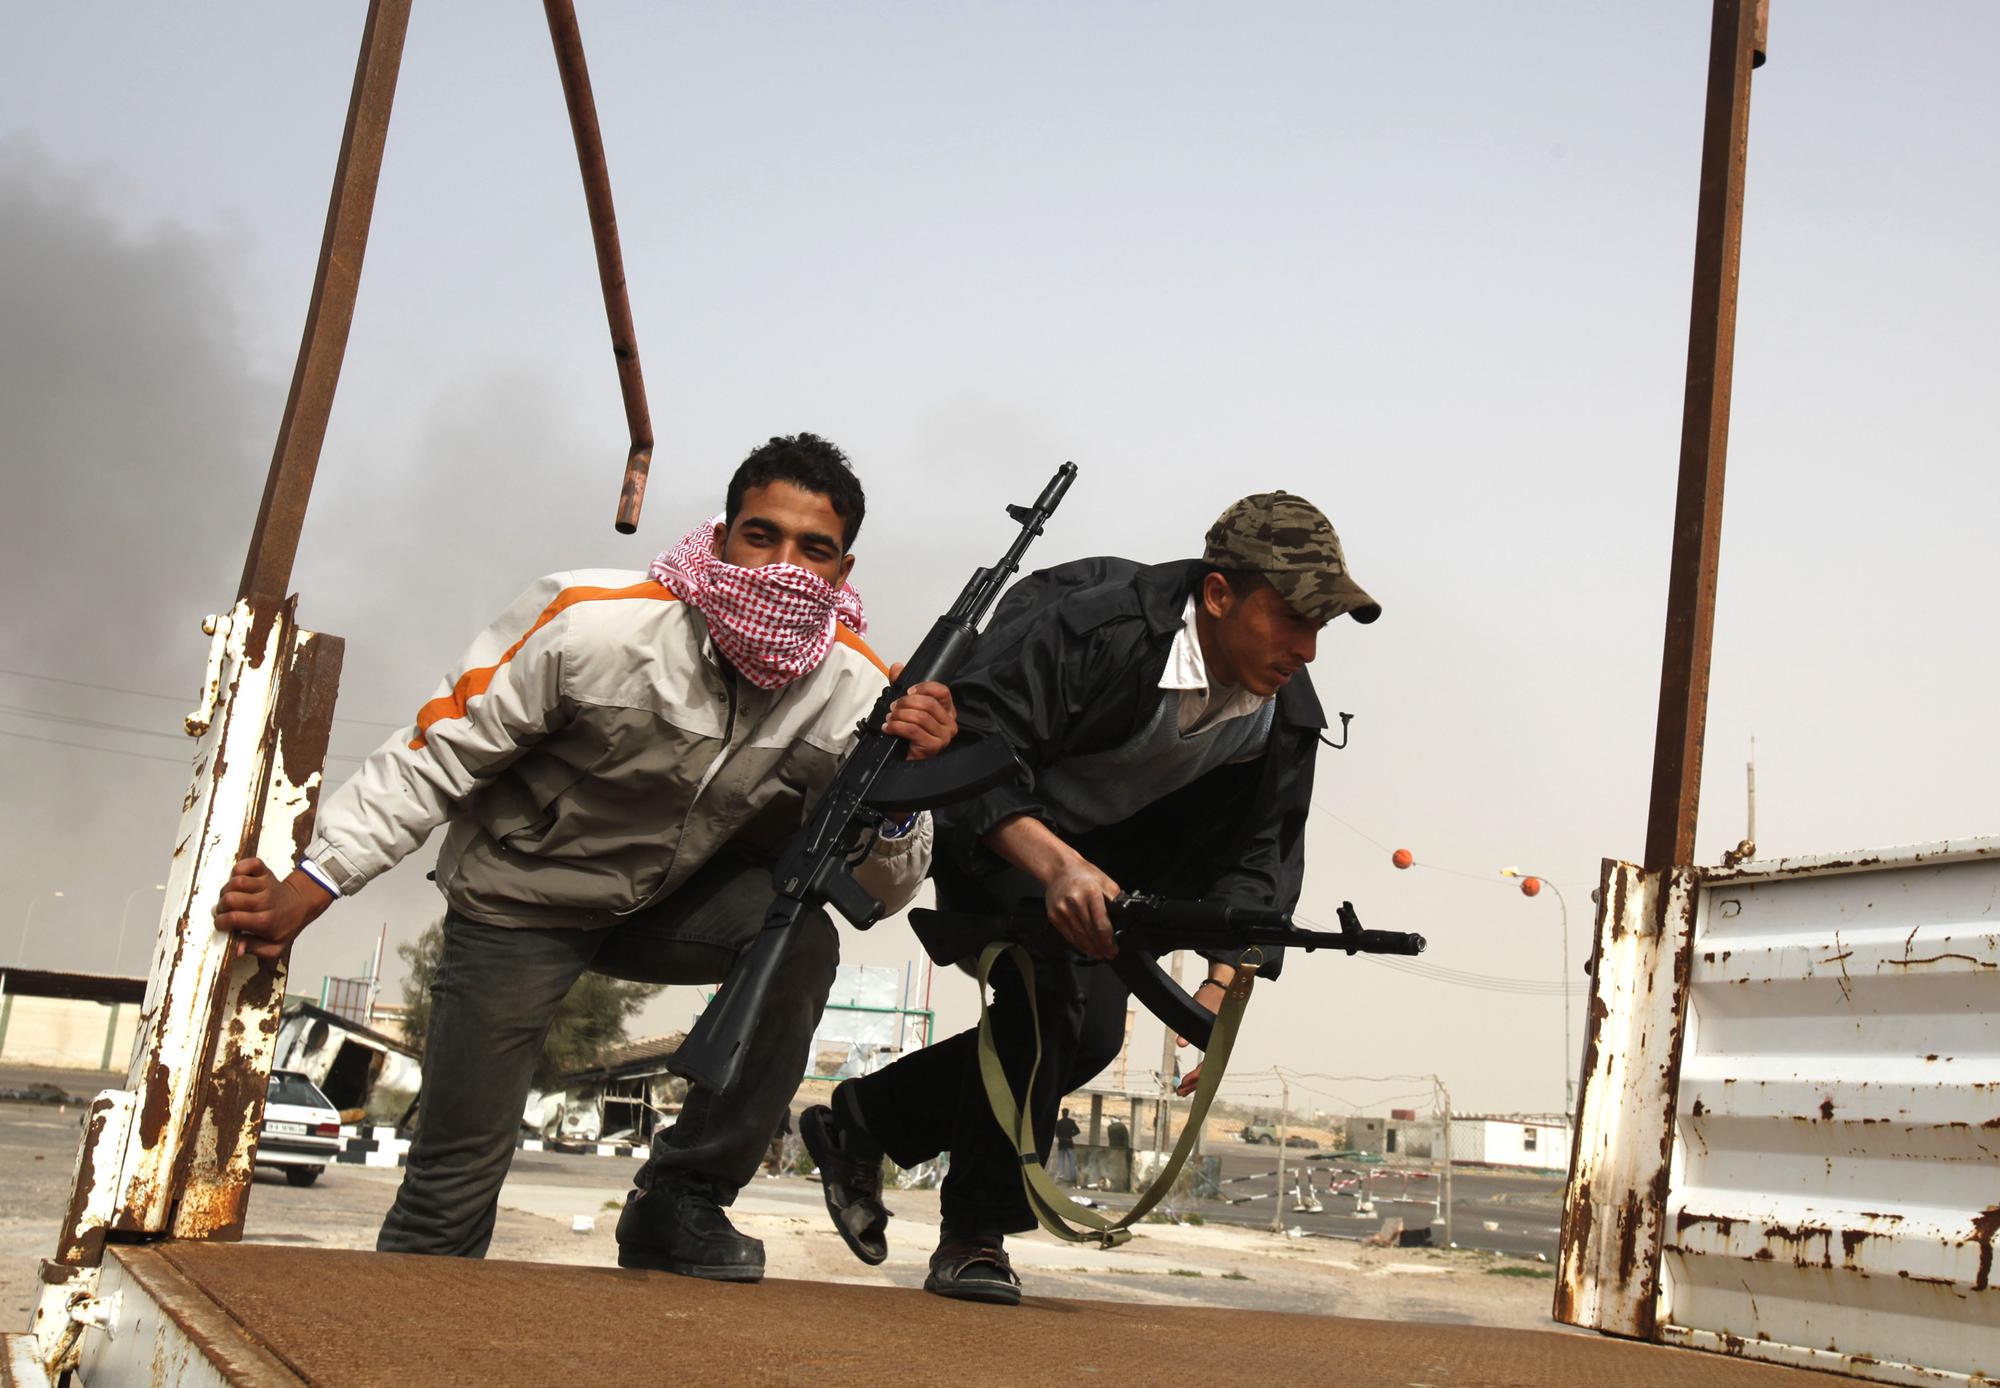 Dans la ville d'Ajdabiya, les opposants se préparaient depuis plusieurs jours à subir une attaque des forces pro-kadhafi. [REUTERS - Asmaa Waguih]